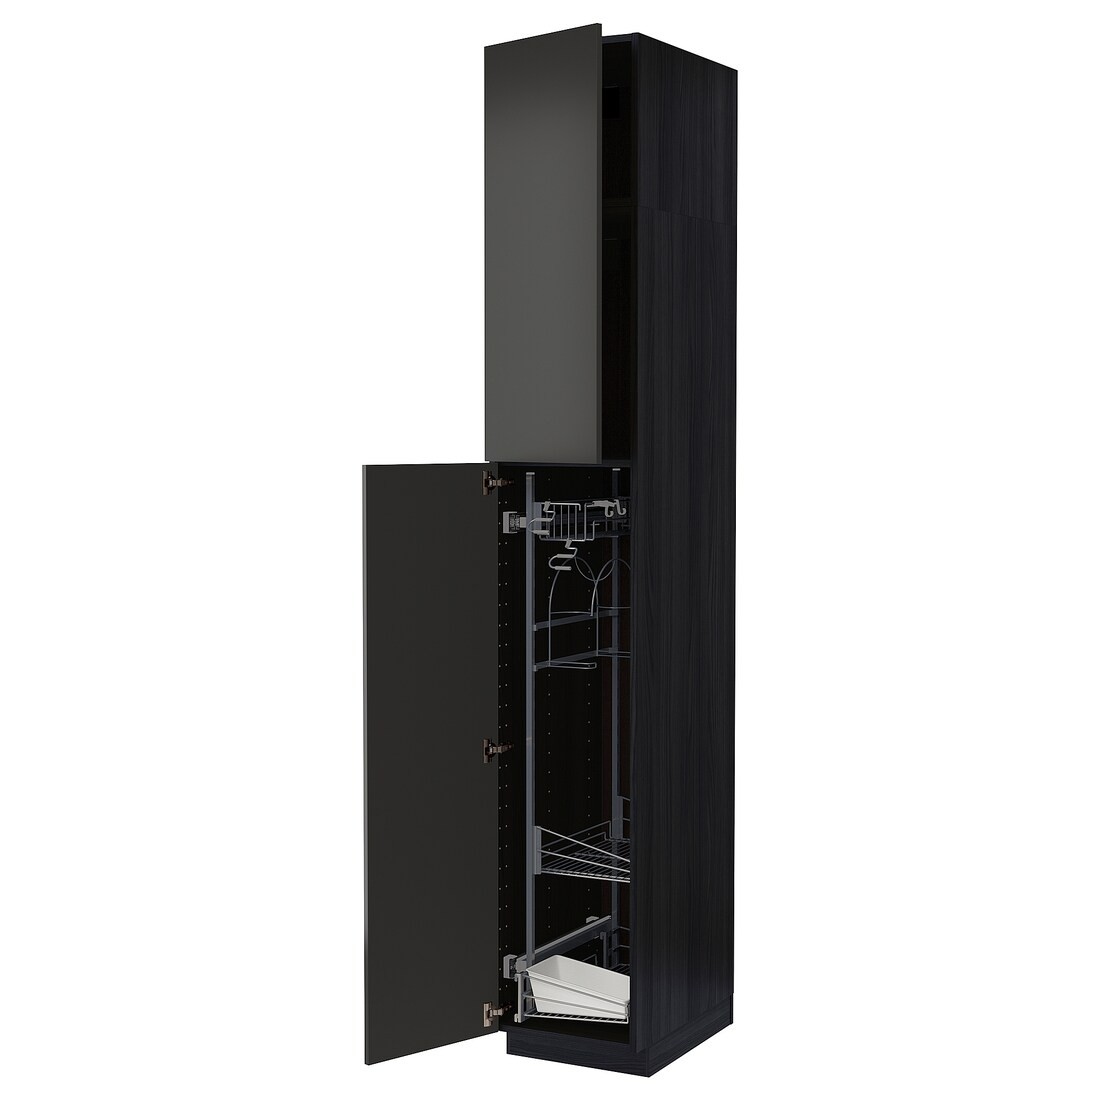 METOD МЕТОД Высокий шкаф с отделением для аксессуаров для уборки, черный / Nickebo матовый антрацит, 40x60x240 см